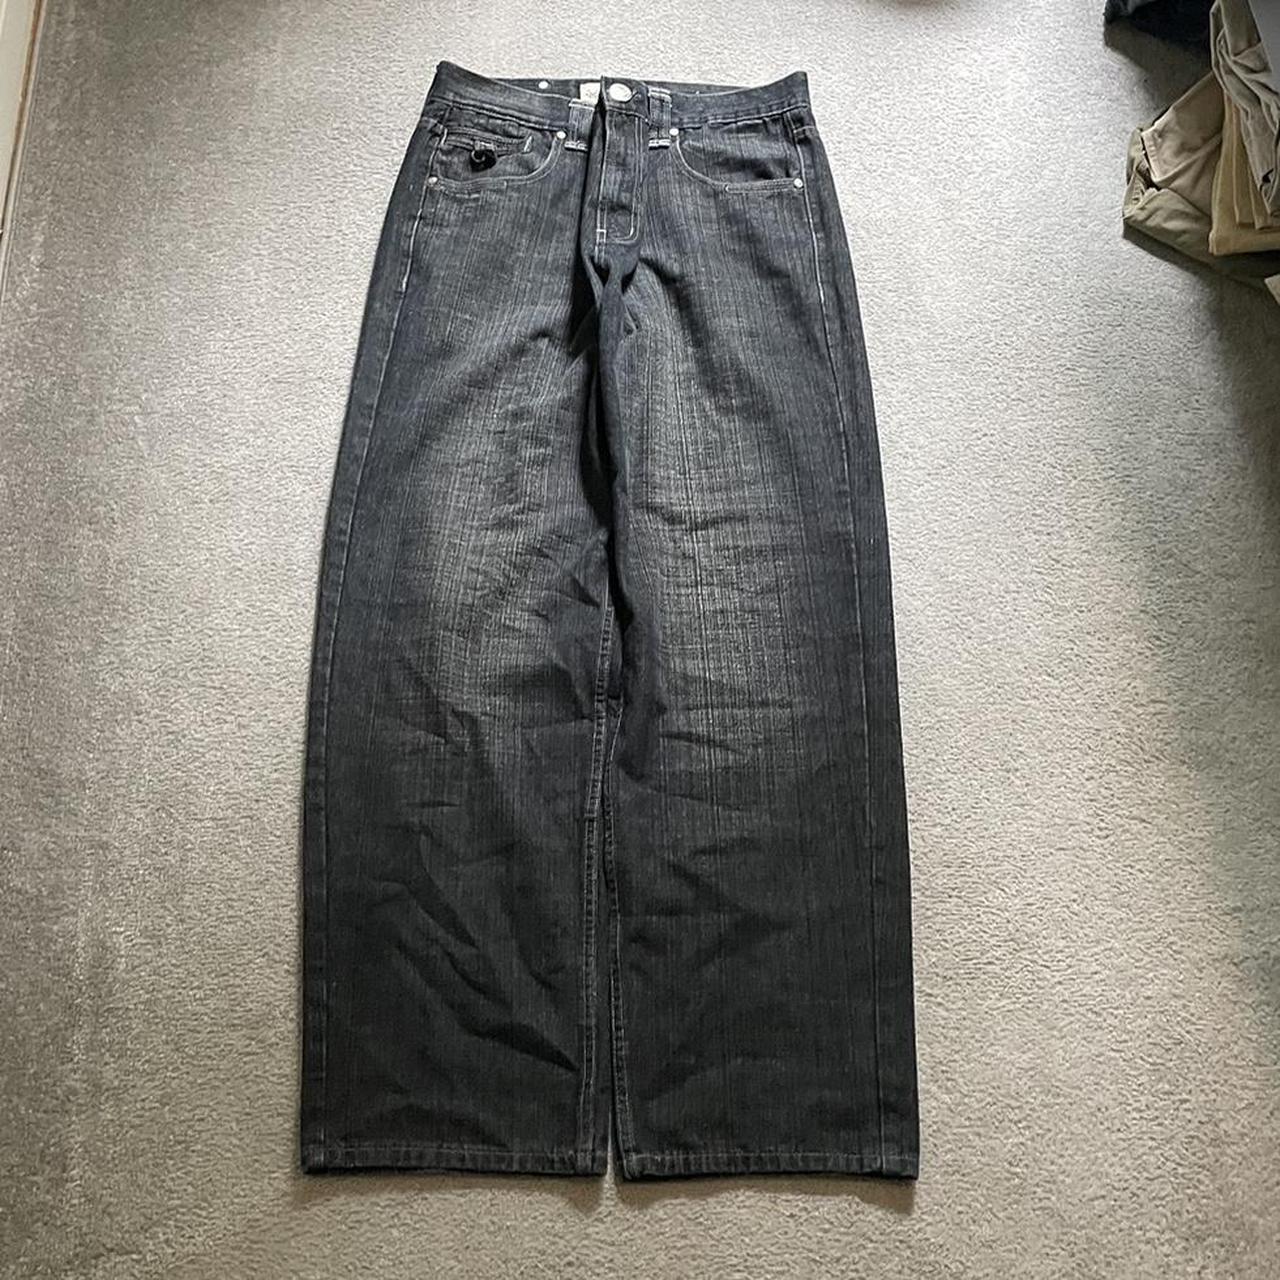 Cyber y2k grunge baggy jeans faded 2000s wide leg... - Depop